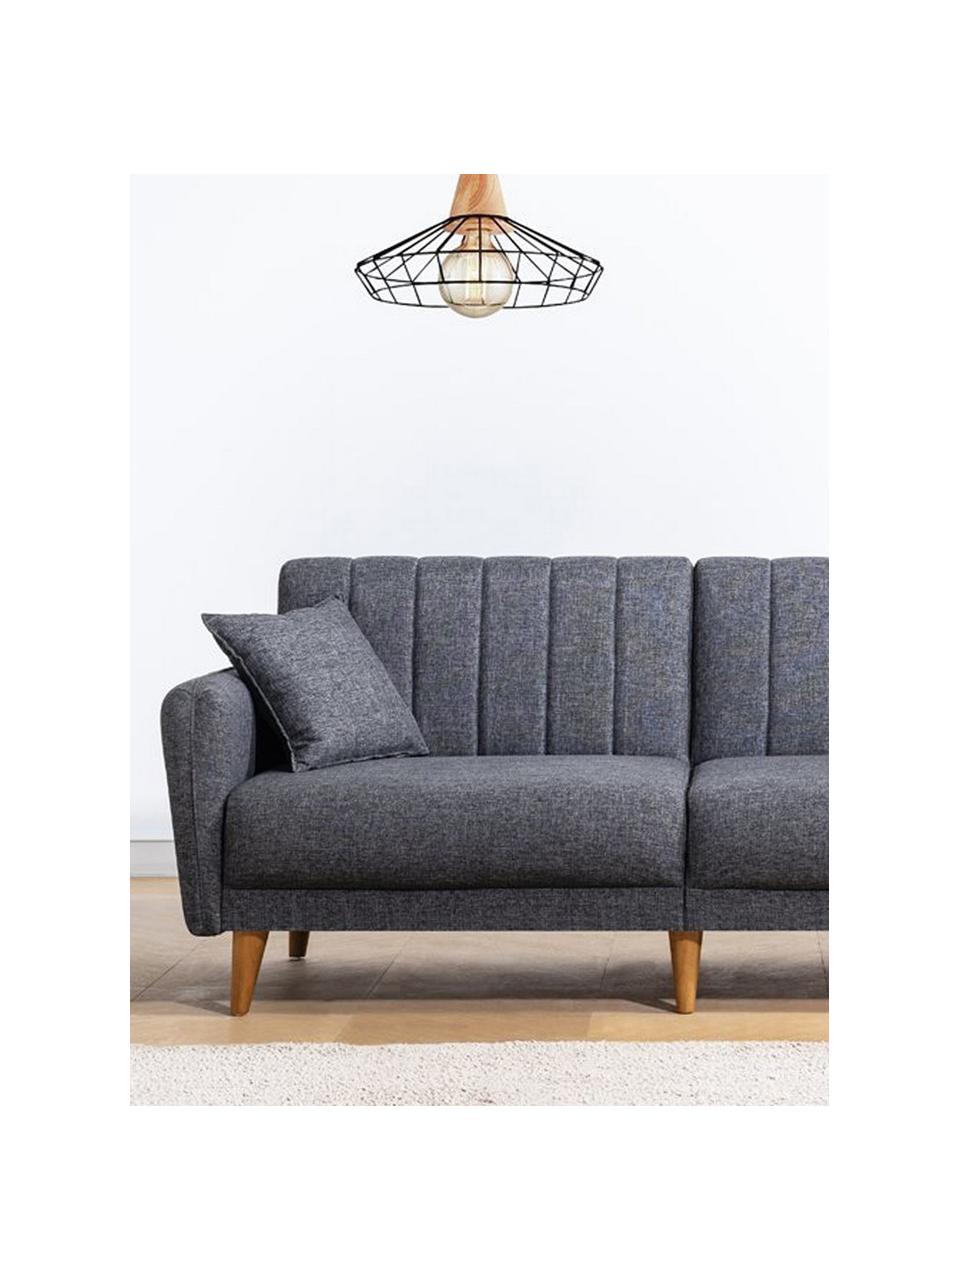 Sofa rozkładana Aqua (3-osobowa), Tapicerka: len, Stelaż: drewno rogowe, metal, Nogi: drewno naturalne, Ciemny szary, S 202 x G 85 cm